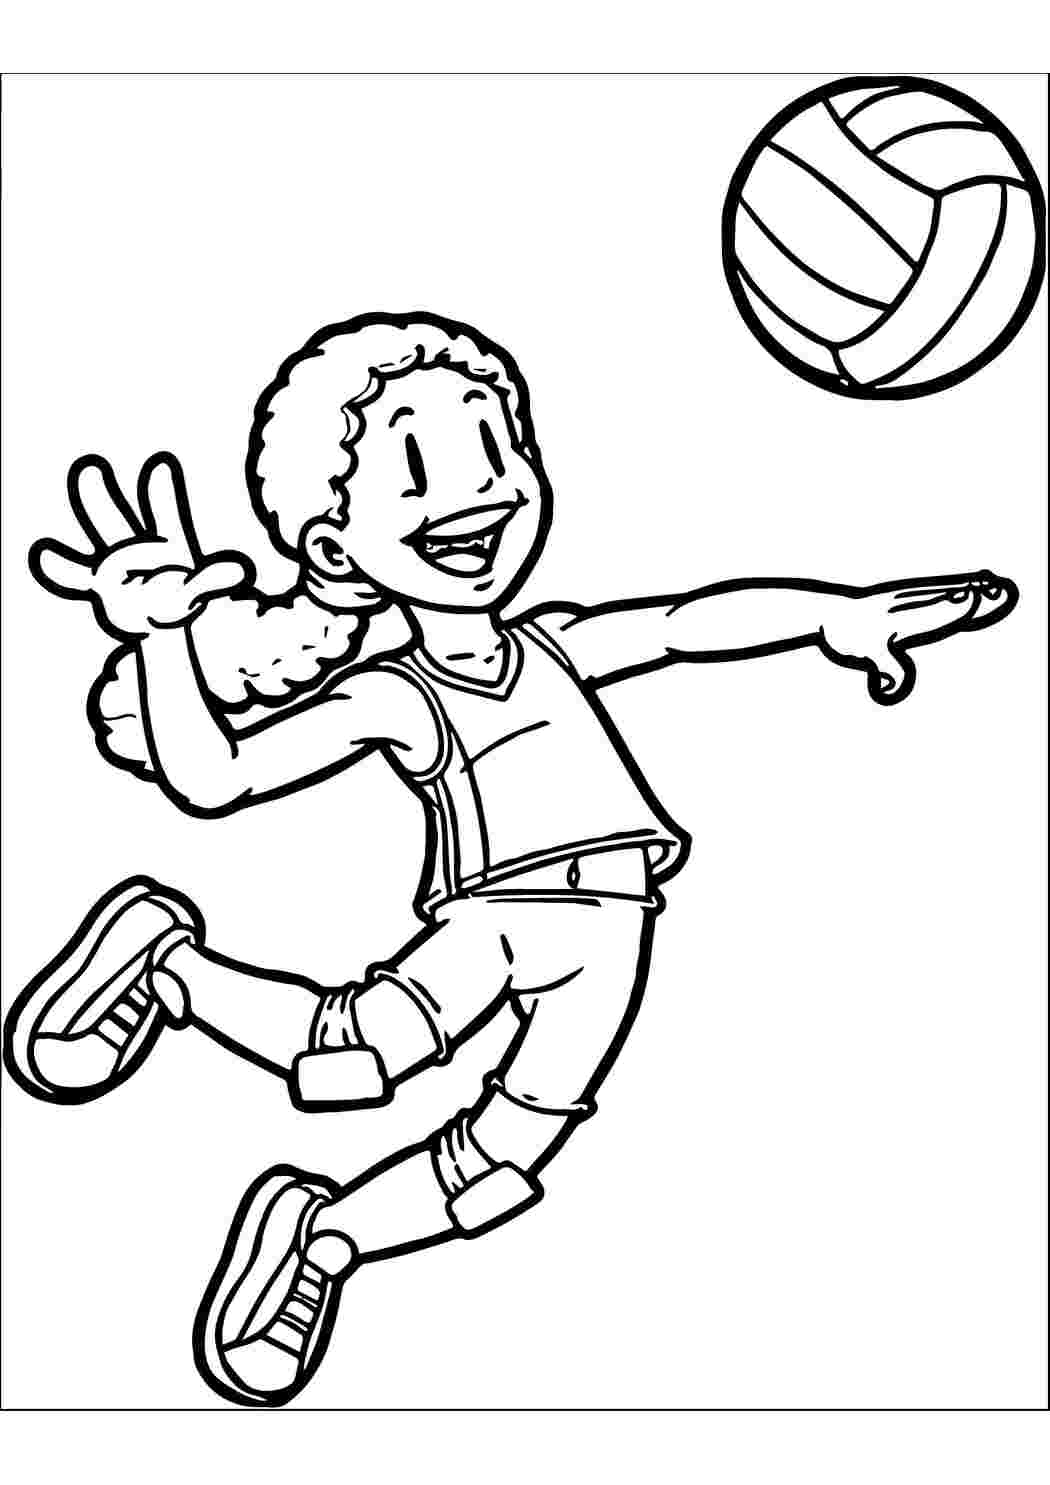 Раскраски Раскраски с игрой волейбол пляжный и другие виды волейбола. спортивные игры раскраски для детей 